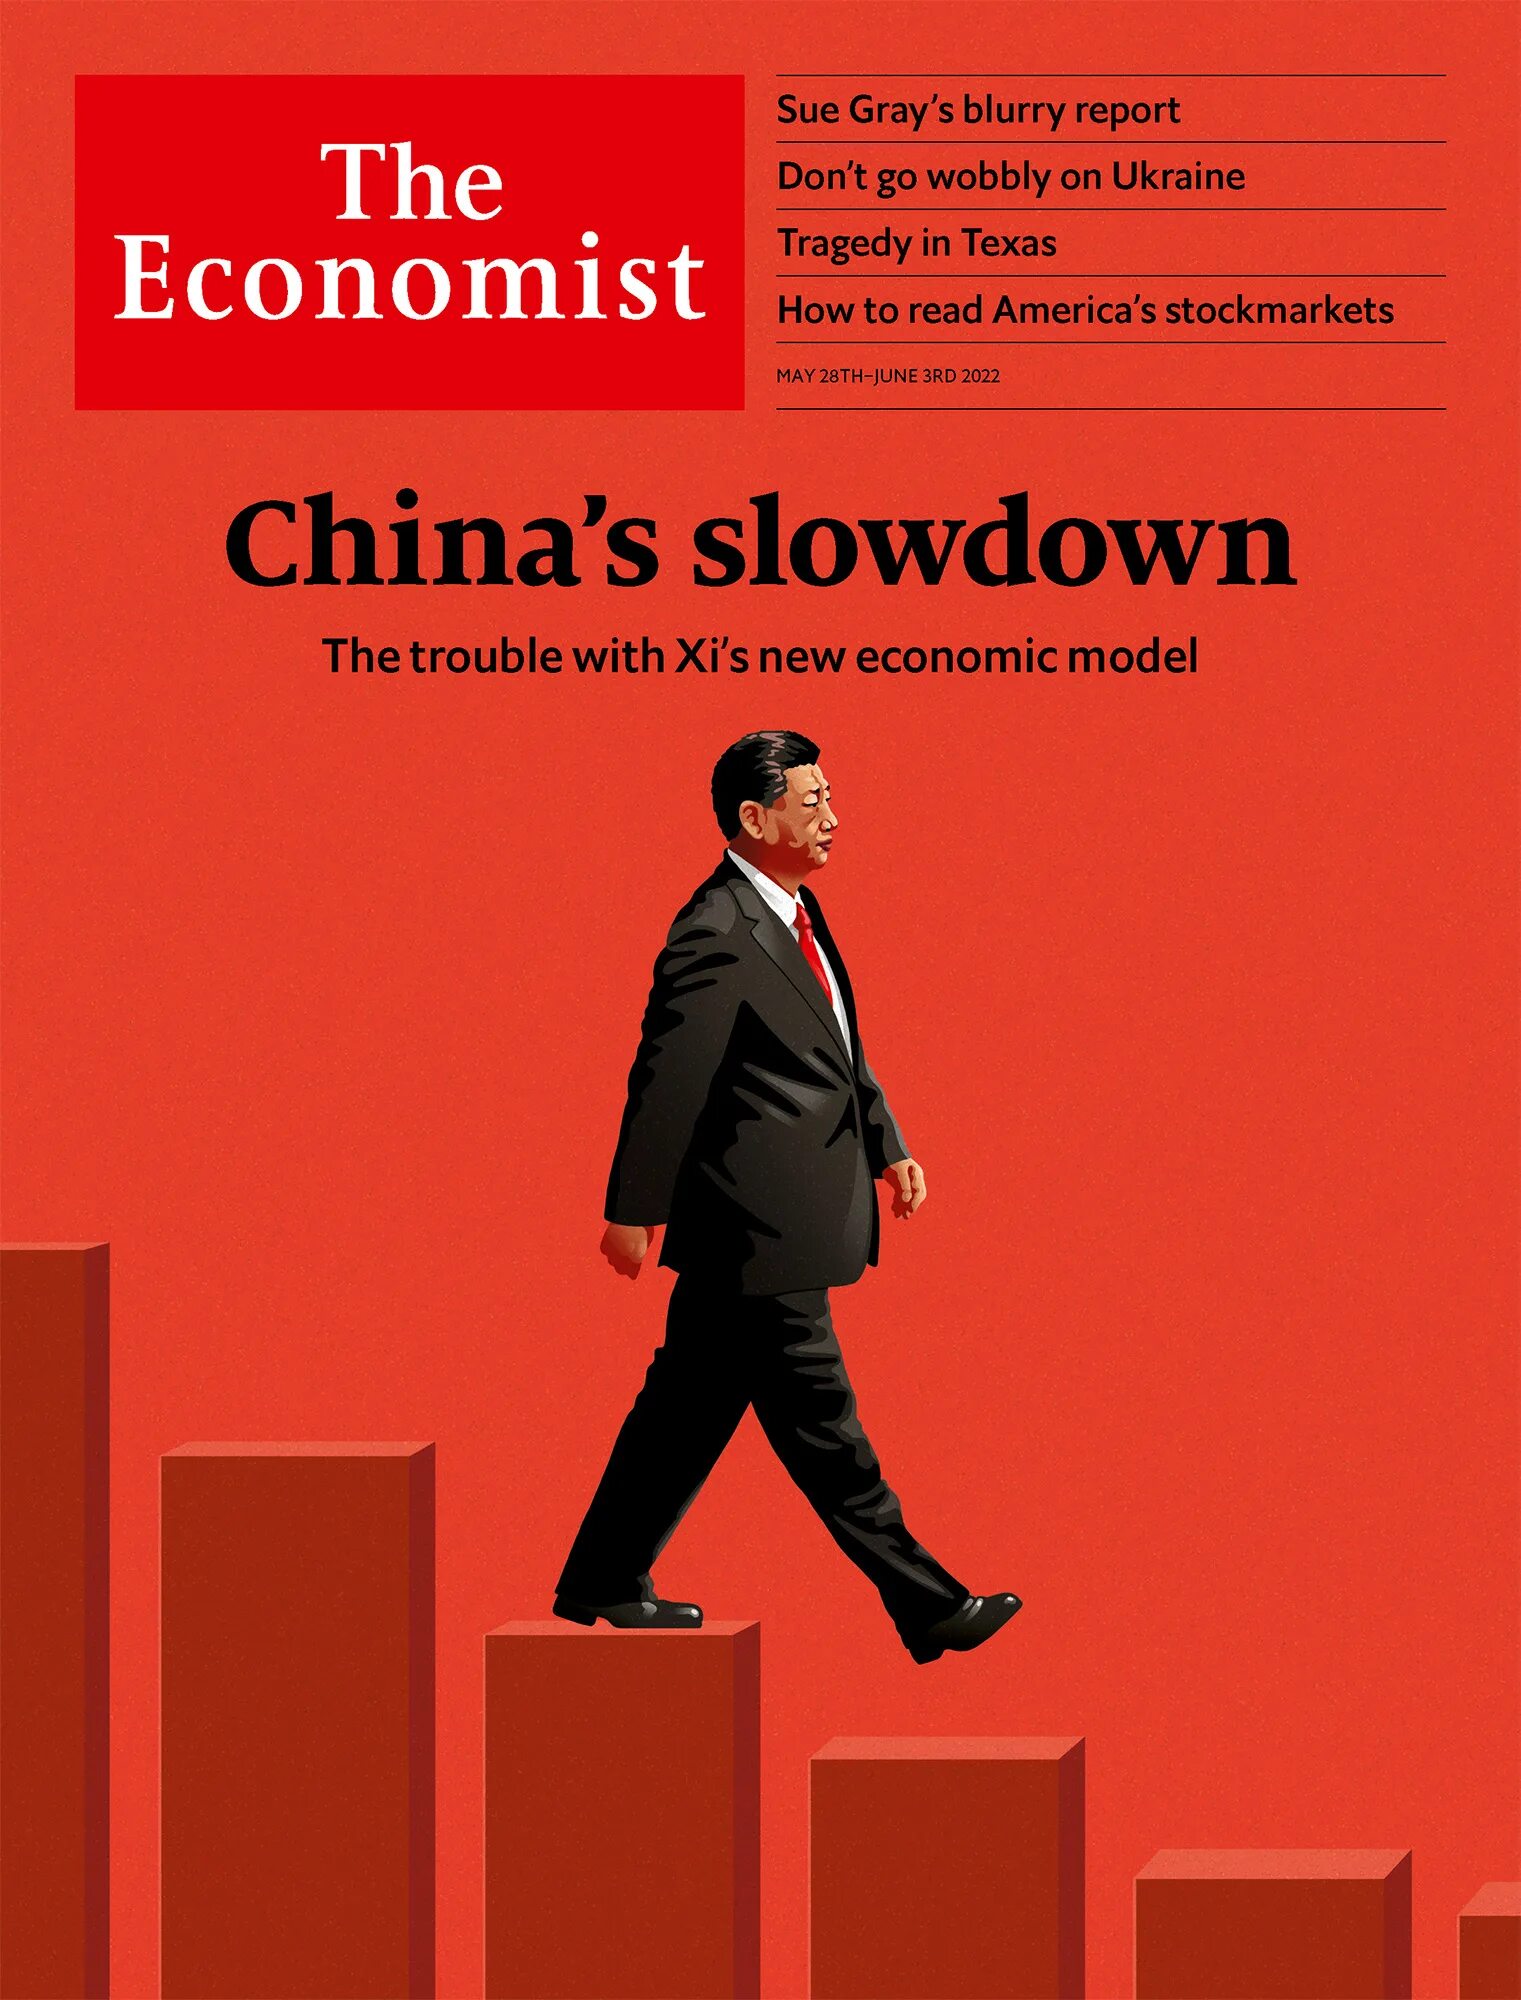 Последний журнал экономист. Обложка журнала the Economist май 2022. Обложка журнала экономист 2022. The Economist 2022 январь обложка. The Economist обложка июнь 2022.